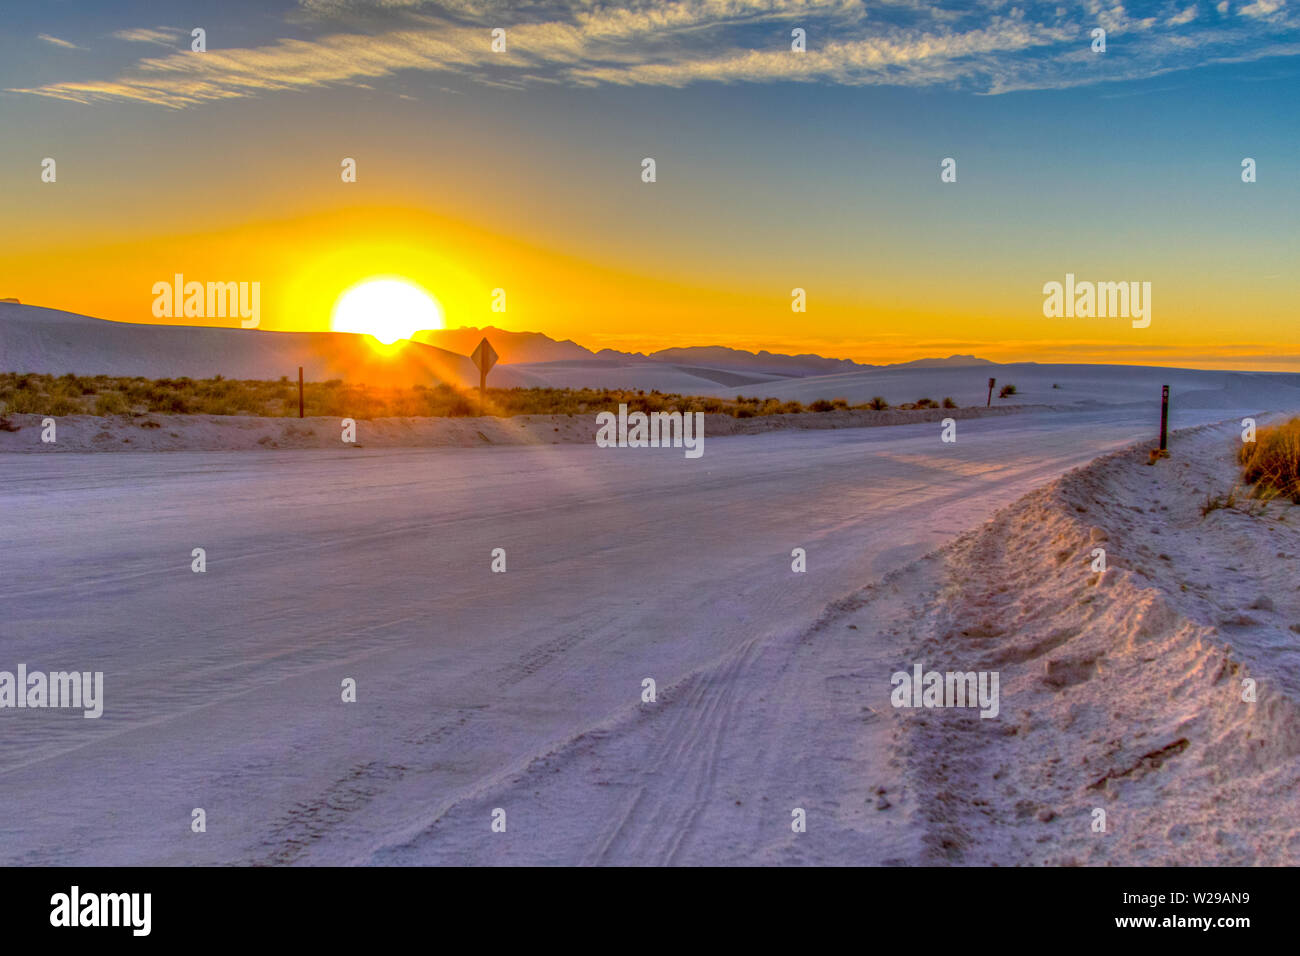 Ruta Por El Desierto. Hermosa puesta de sol en el desierto con un camino rural remoto serpenteando por las dunas de arena del Monumento Nacional White Sands en Nuevo México. Foto de stock